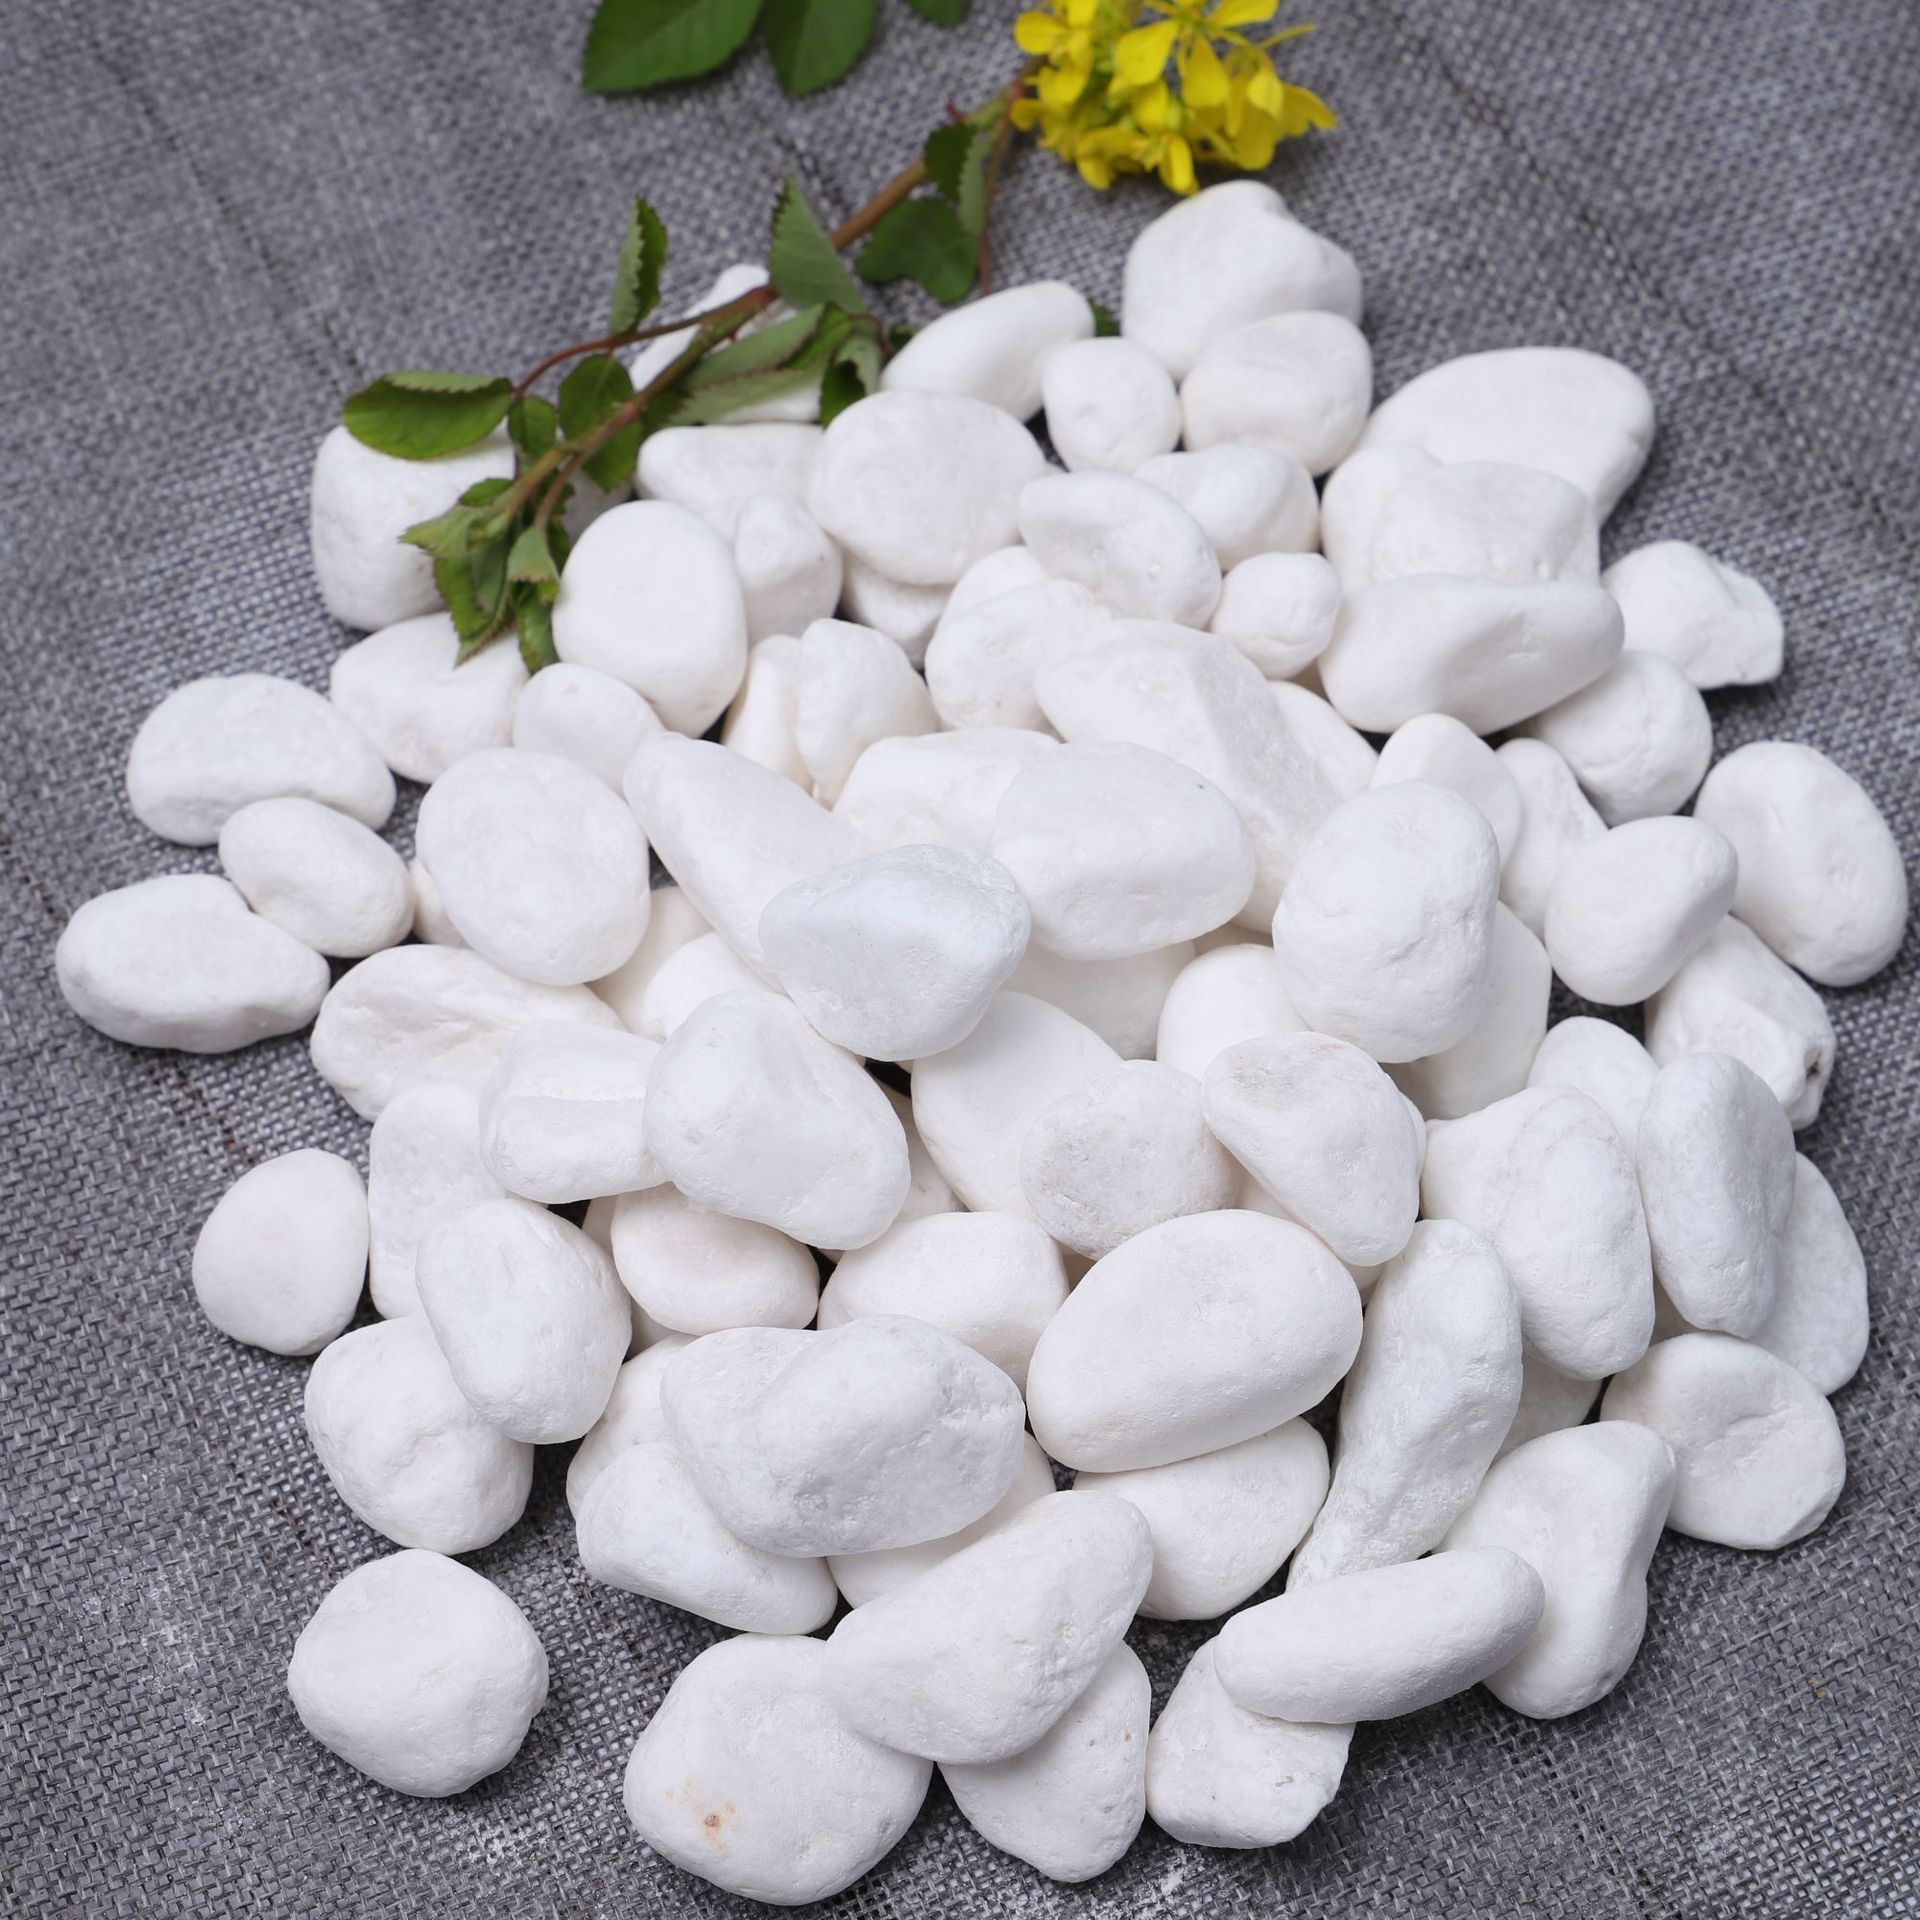 白色石头种类图片